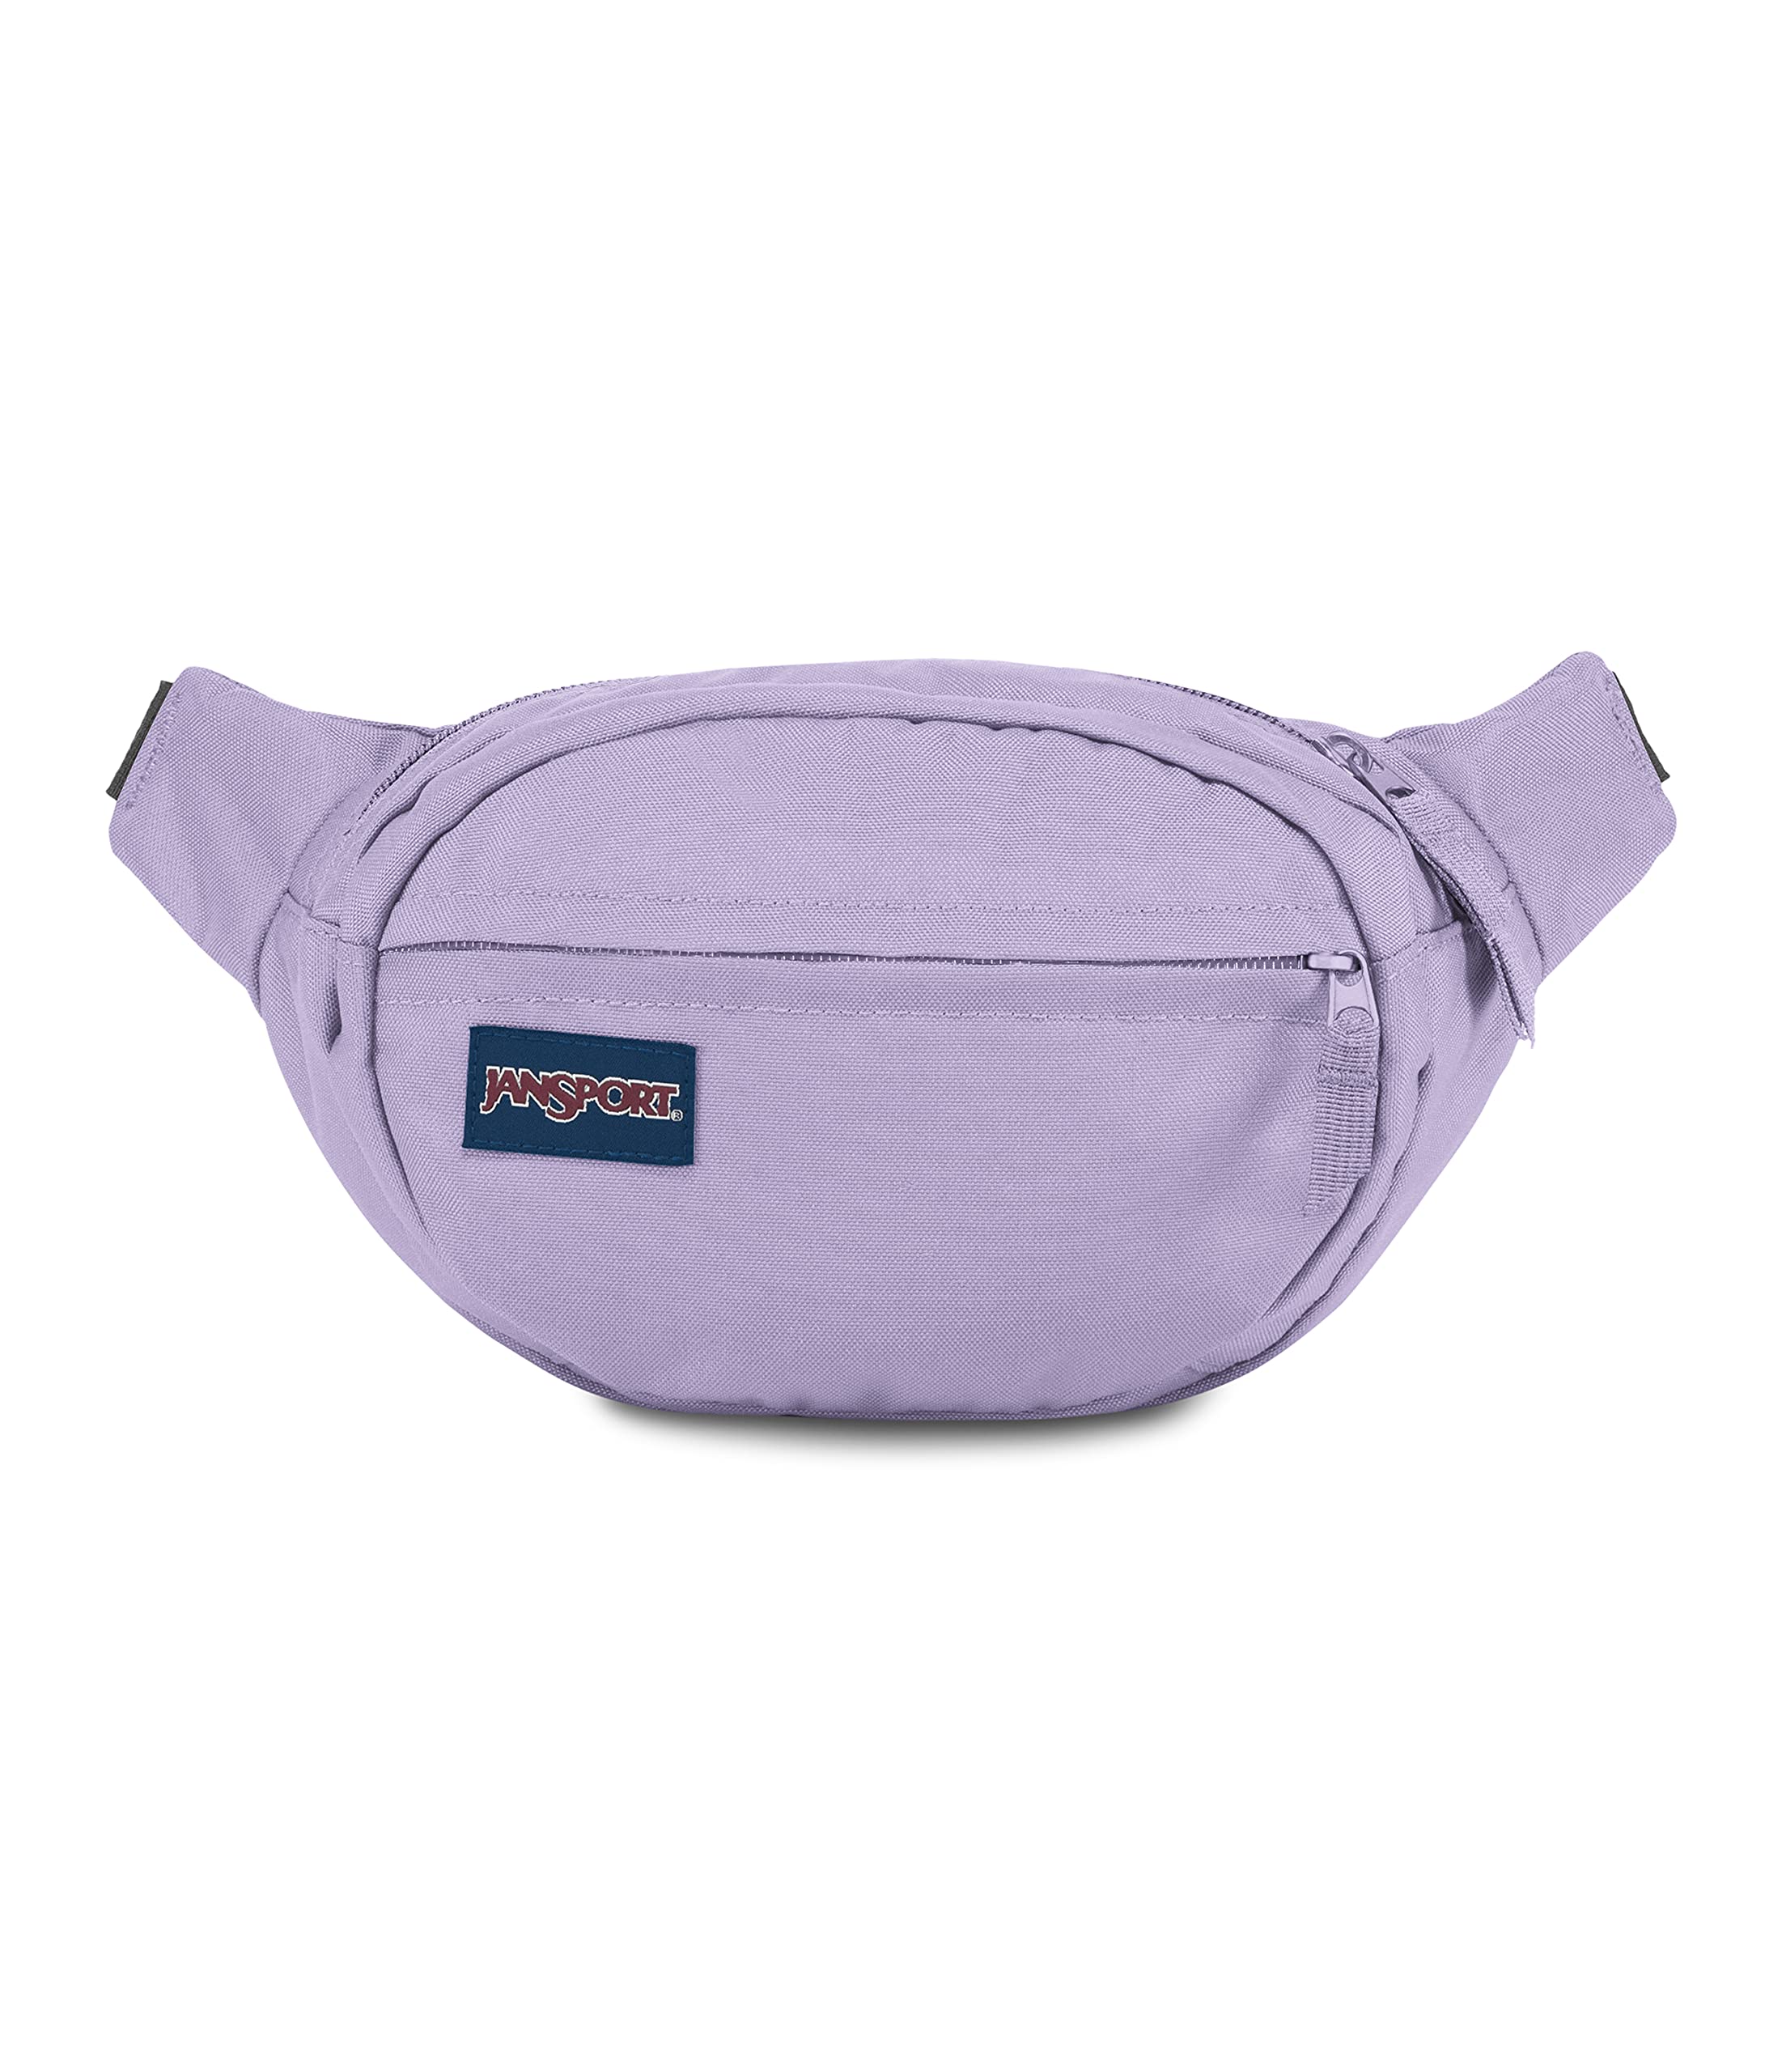 JanSport Fifth Avenue Waistpack - Travel Fanny Pack Hip Bag, 2.5 L